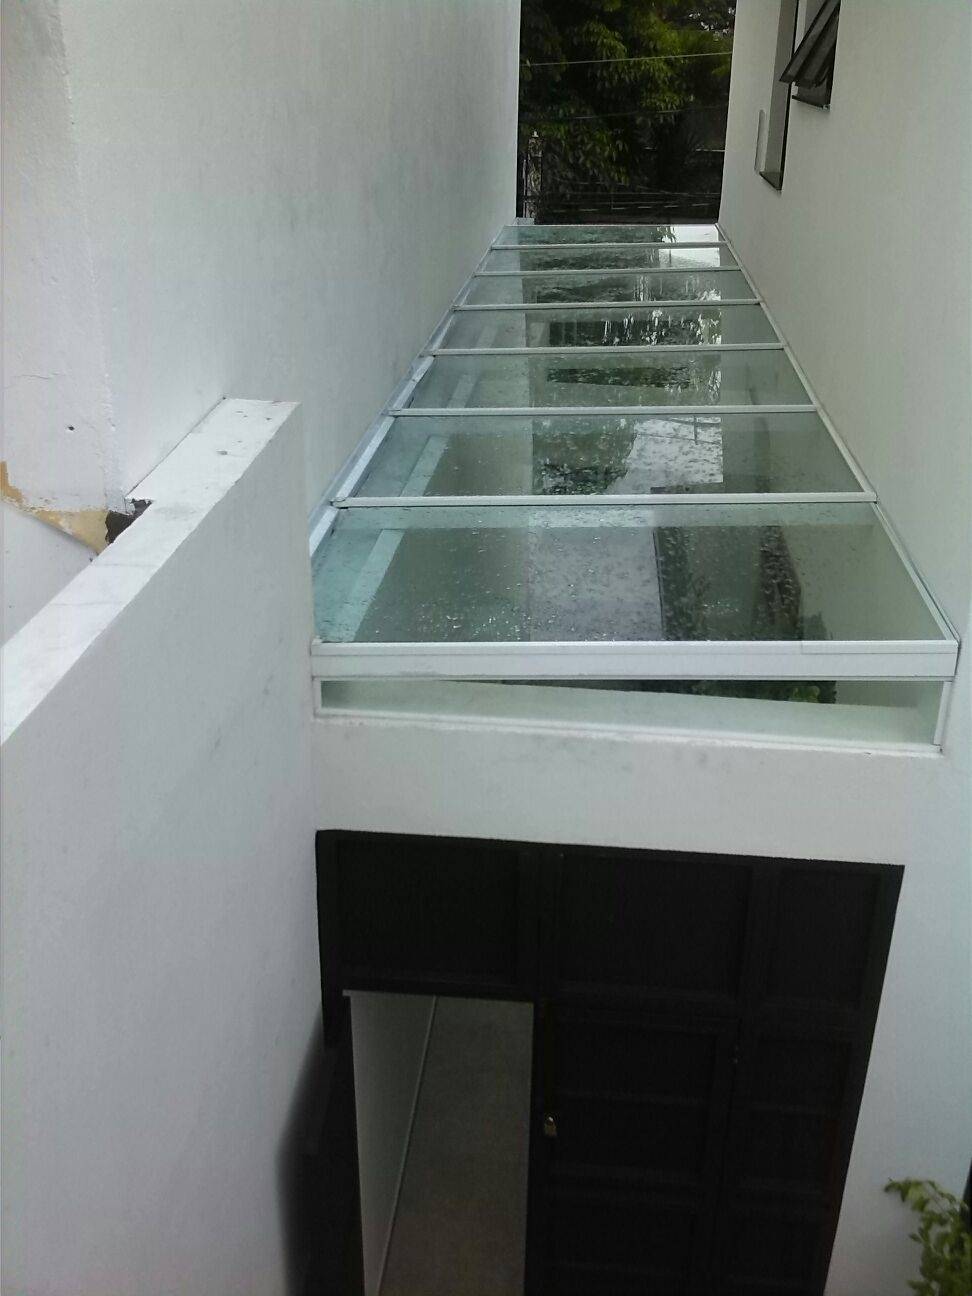 Cobertura de Vidro para Corredor Preço na Cidade Patriarca - Cobertura de Vidro Retrátil